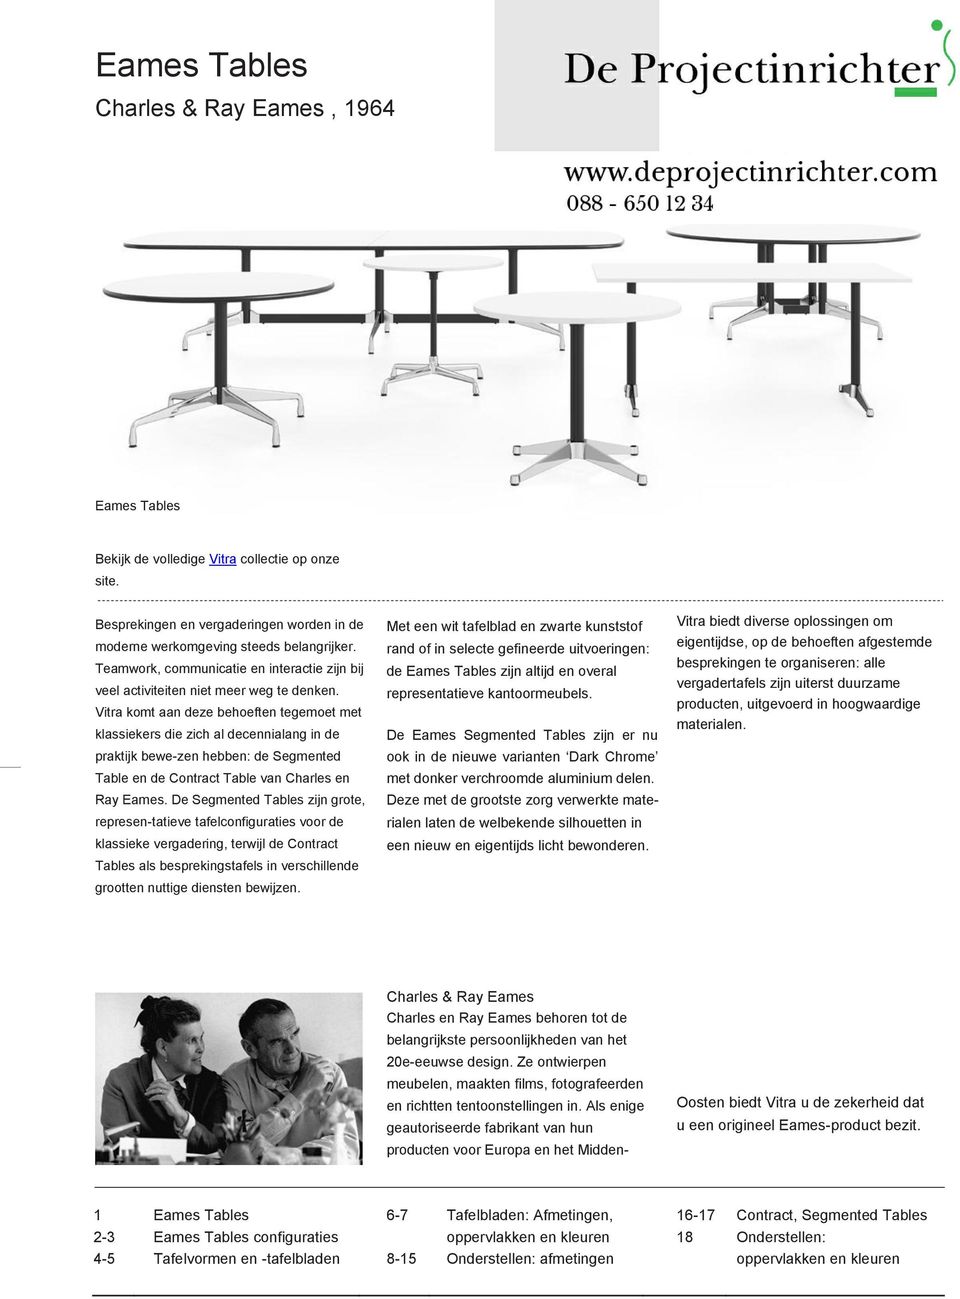 Vitra komt aan deze behoeften tegemoet met klassiekers die zich al decennialang in de praktijk bewe-zen hebben: de Segmented Table en de Contract Table an Charles en Ray Eames.